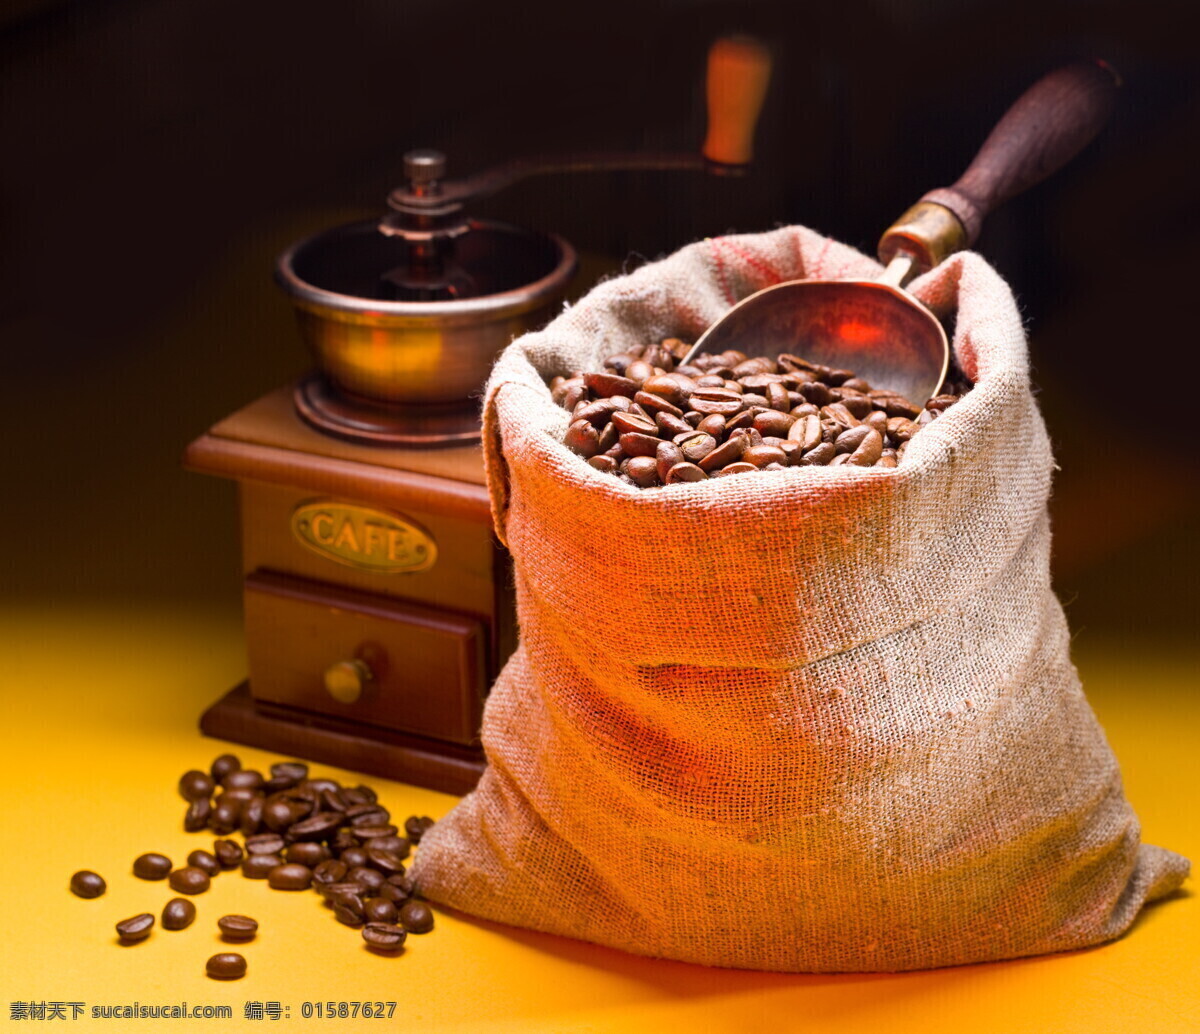 袋子 咖啡豆 高清 咖啡 麻袋 咖啡文化 生活百科 餐饮美食 饮料酒水 食物原料 高清图片 咖啡图片